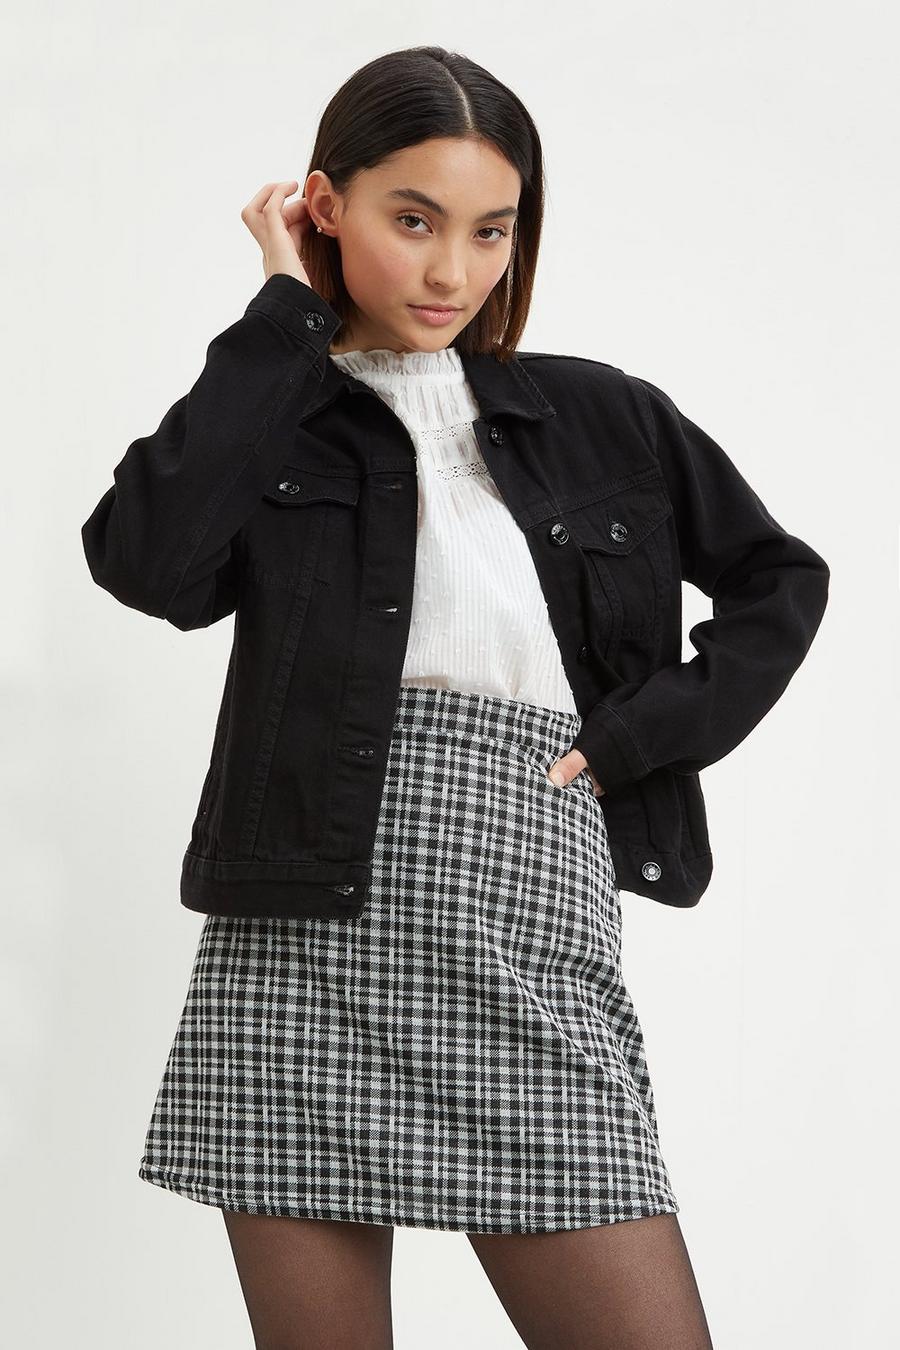 Petite Black Check Mini Skirt